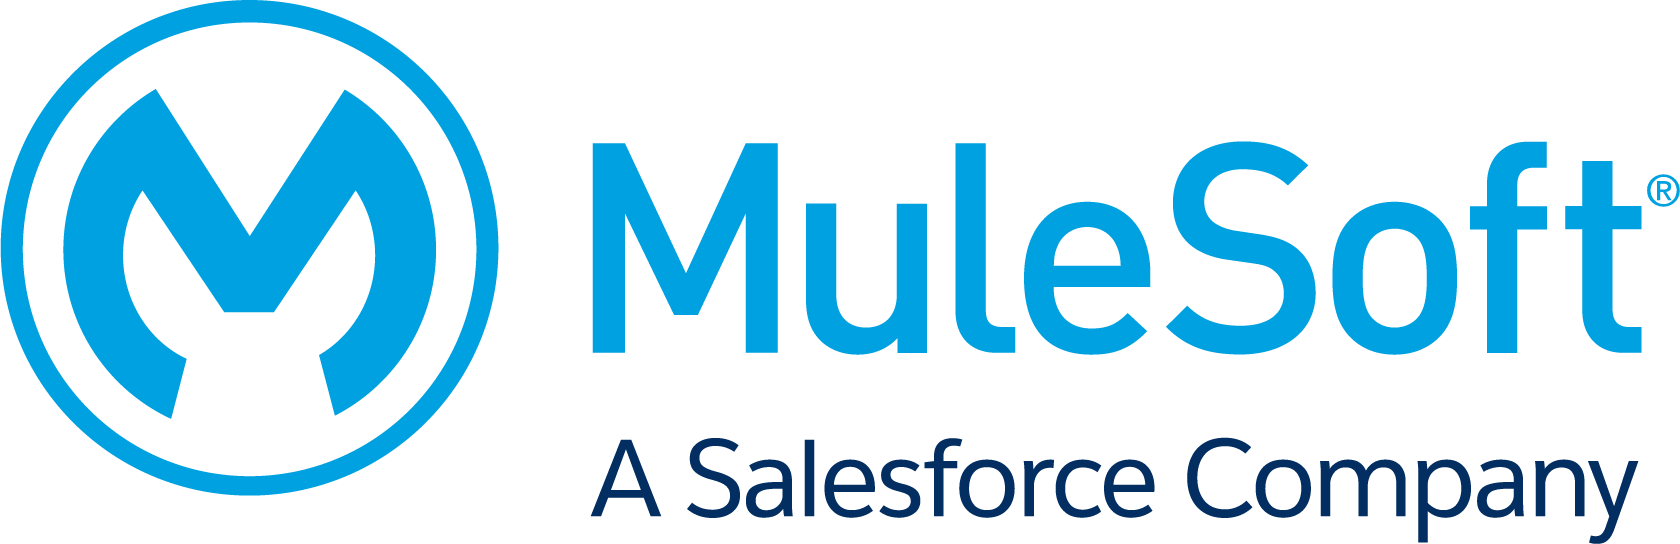 MuleSoft a Salesforce company